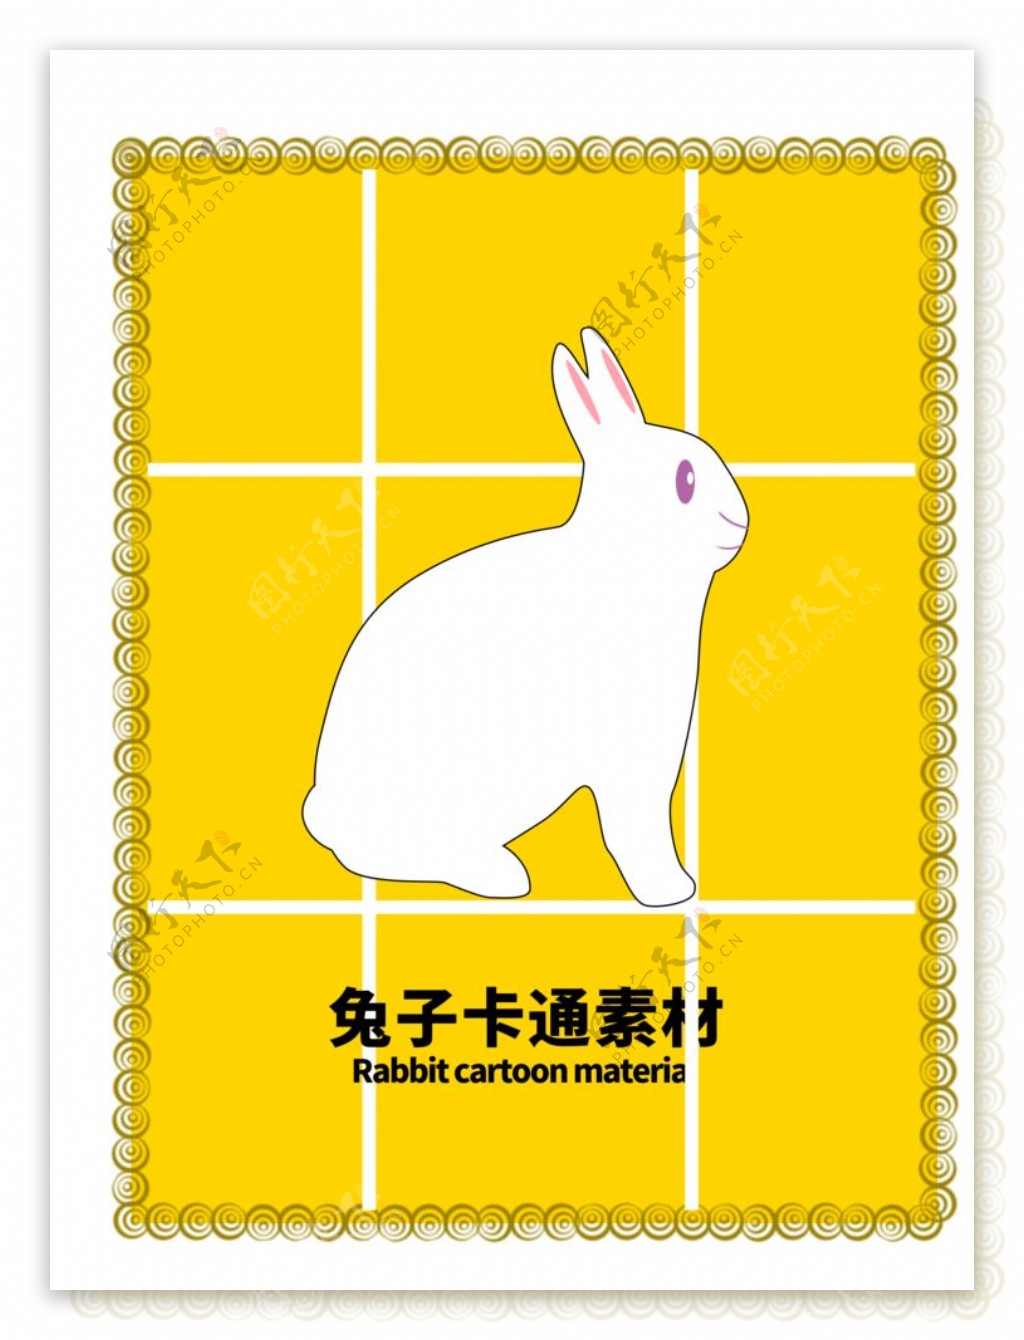 分层边框黄色网格兔子卡通素材图片